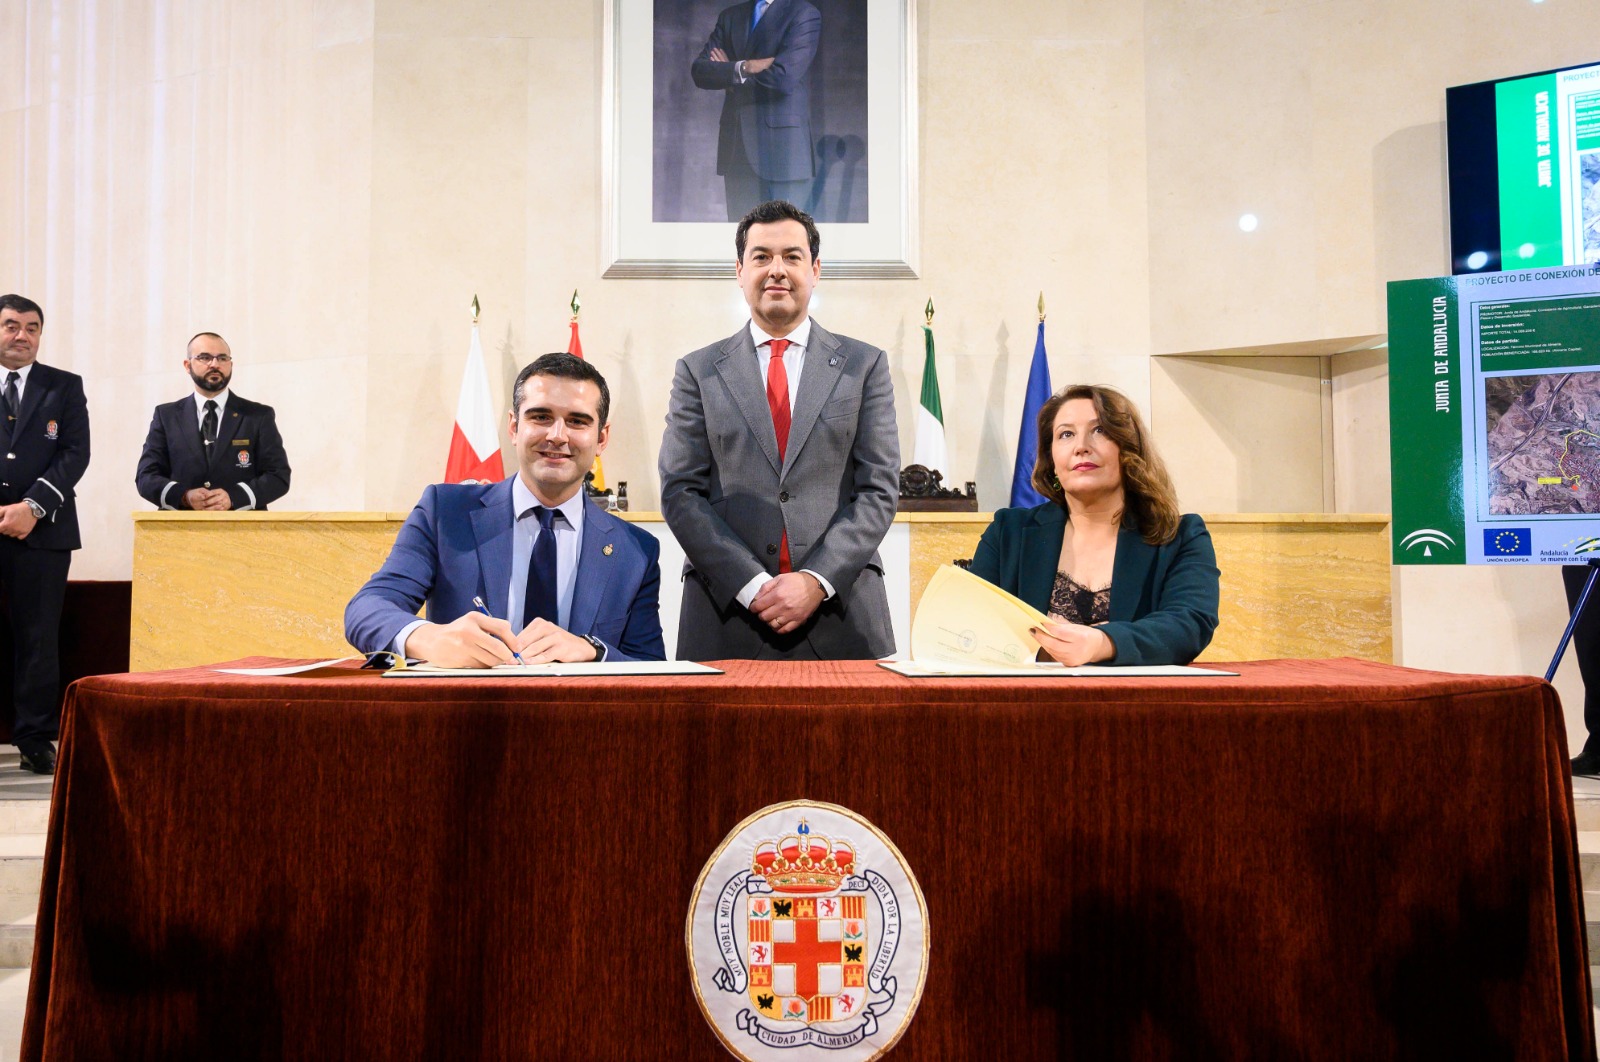 El alcalde celebra “la inversión histórica” aprobada por la Junta para conectar los depósitos de agua de La Pipa y San Cristóbal